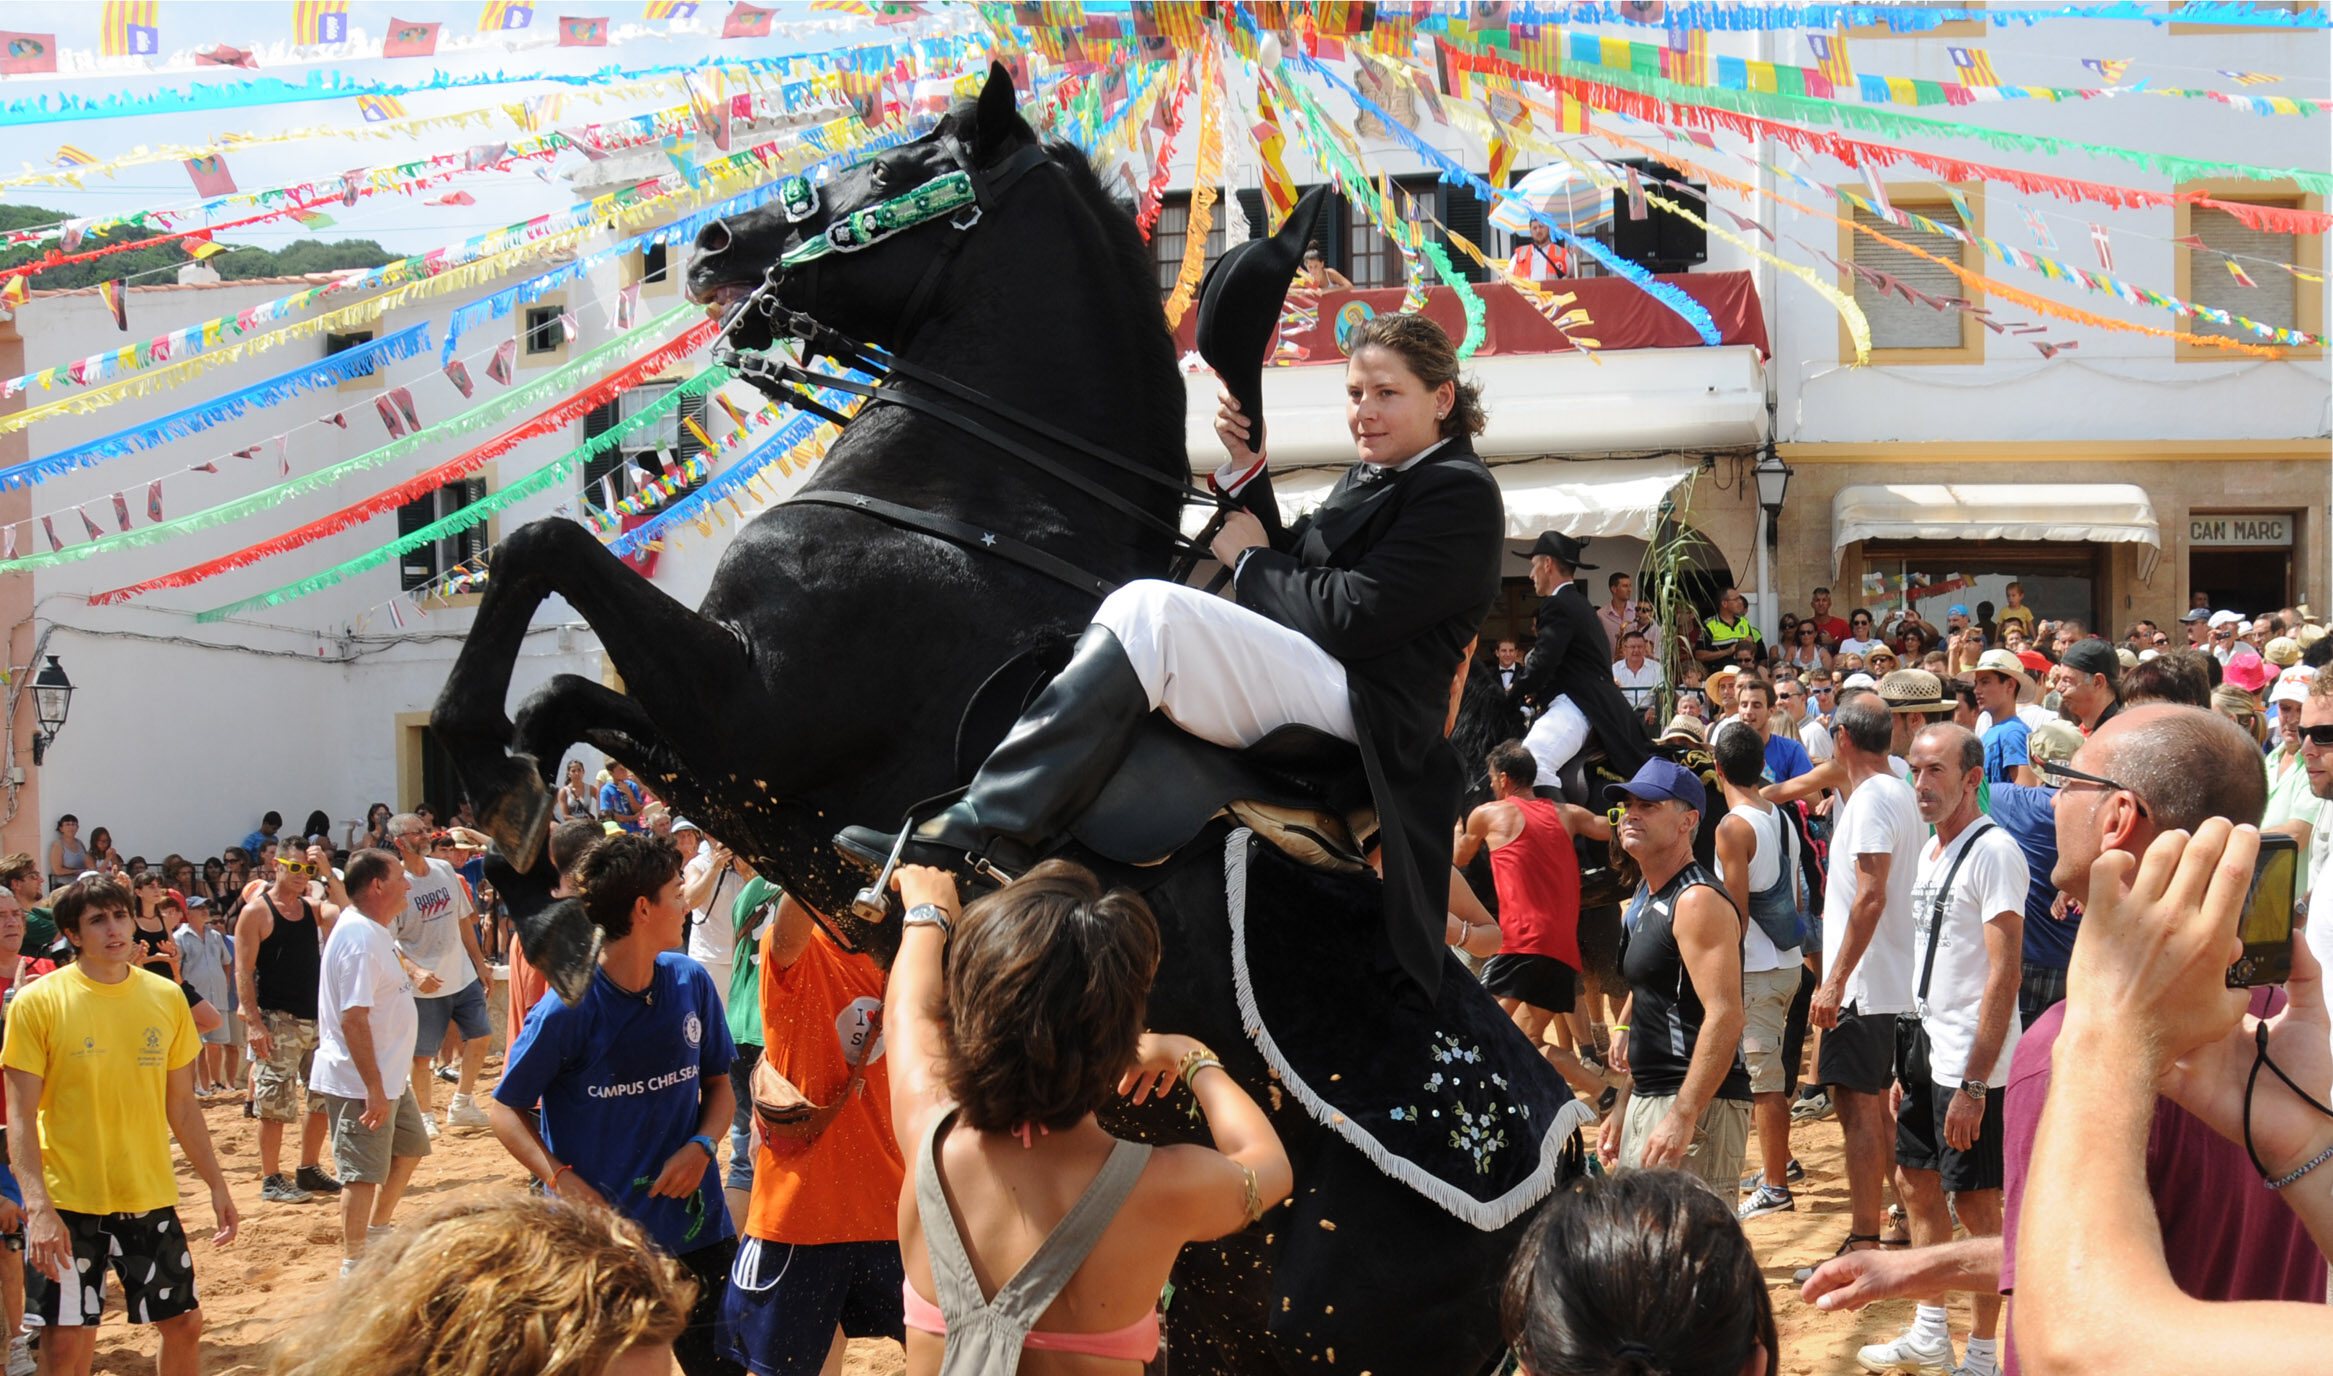 Una dona cavallera fa botar el cavall a les festes de Sant Bartomeu de Ferreries (fotografia: Prats i Camps).